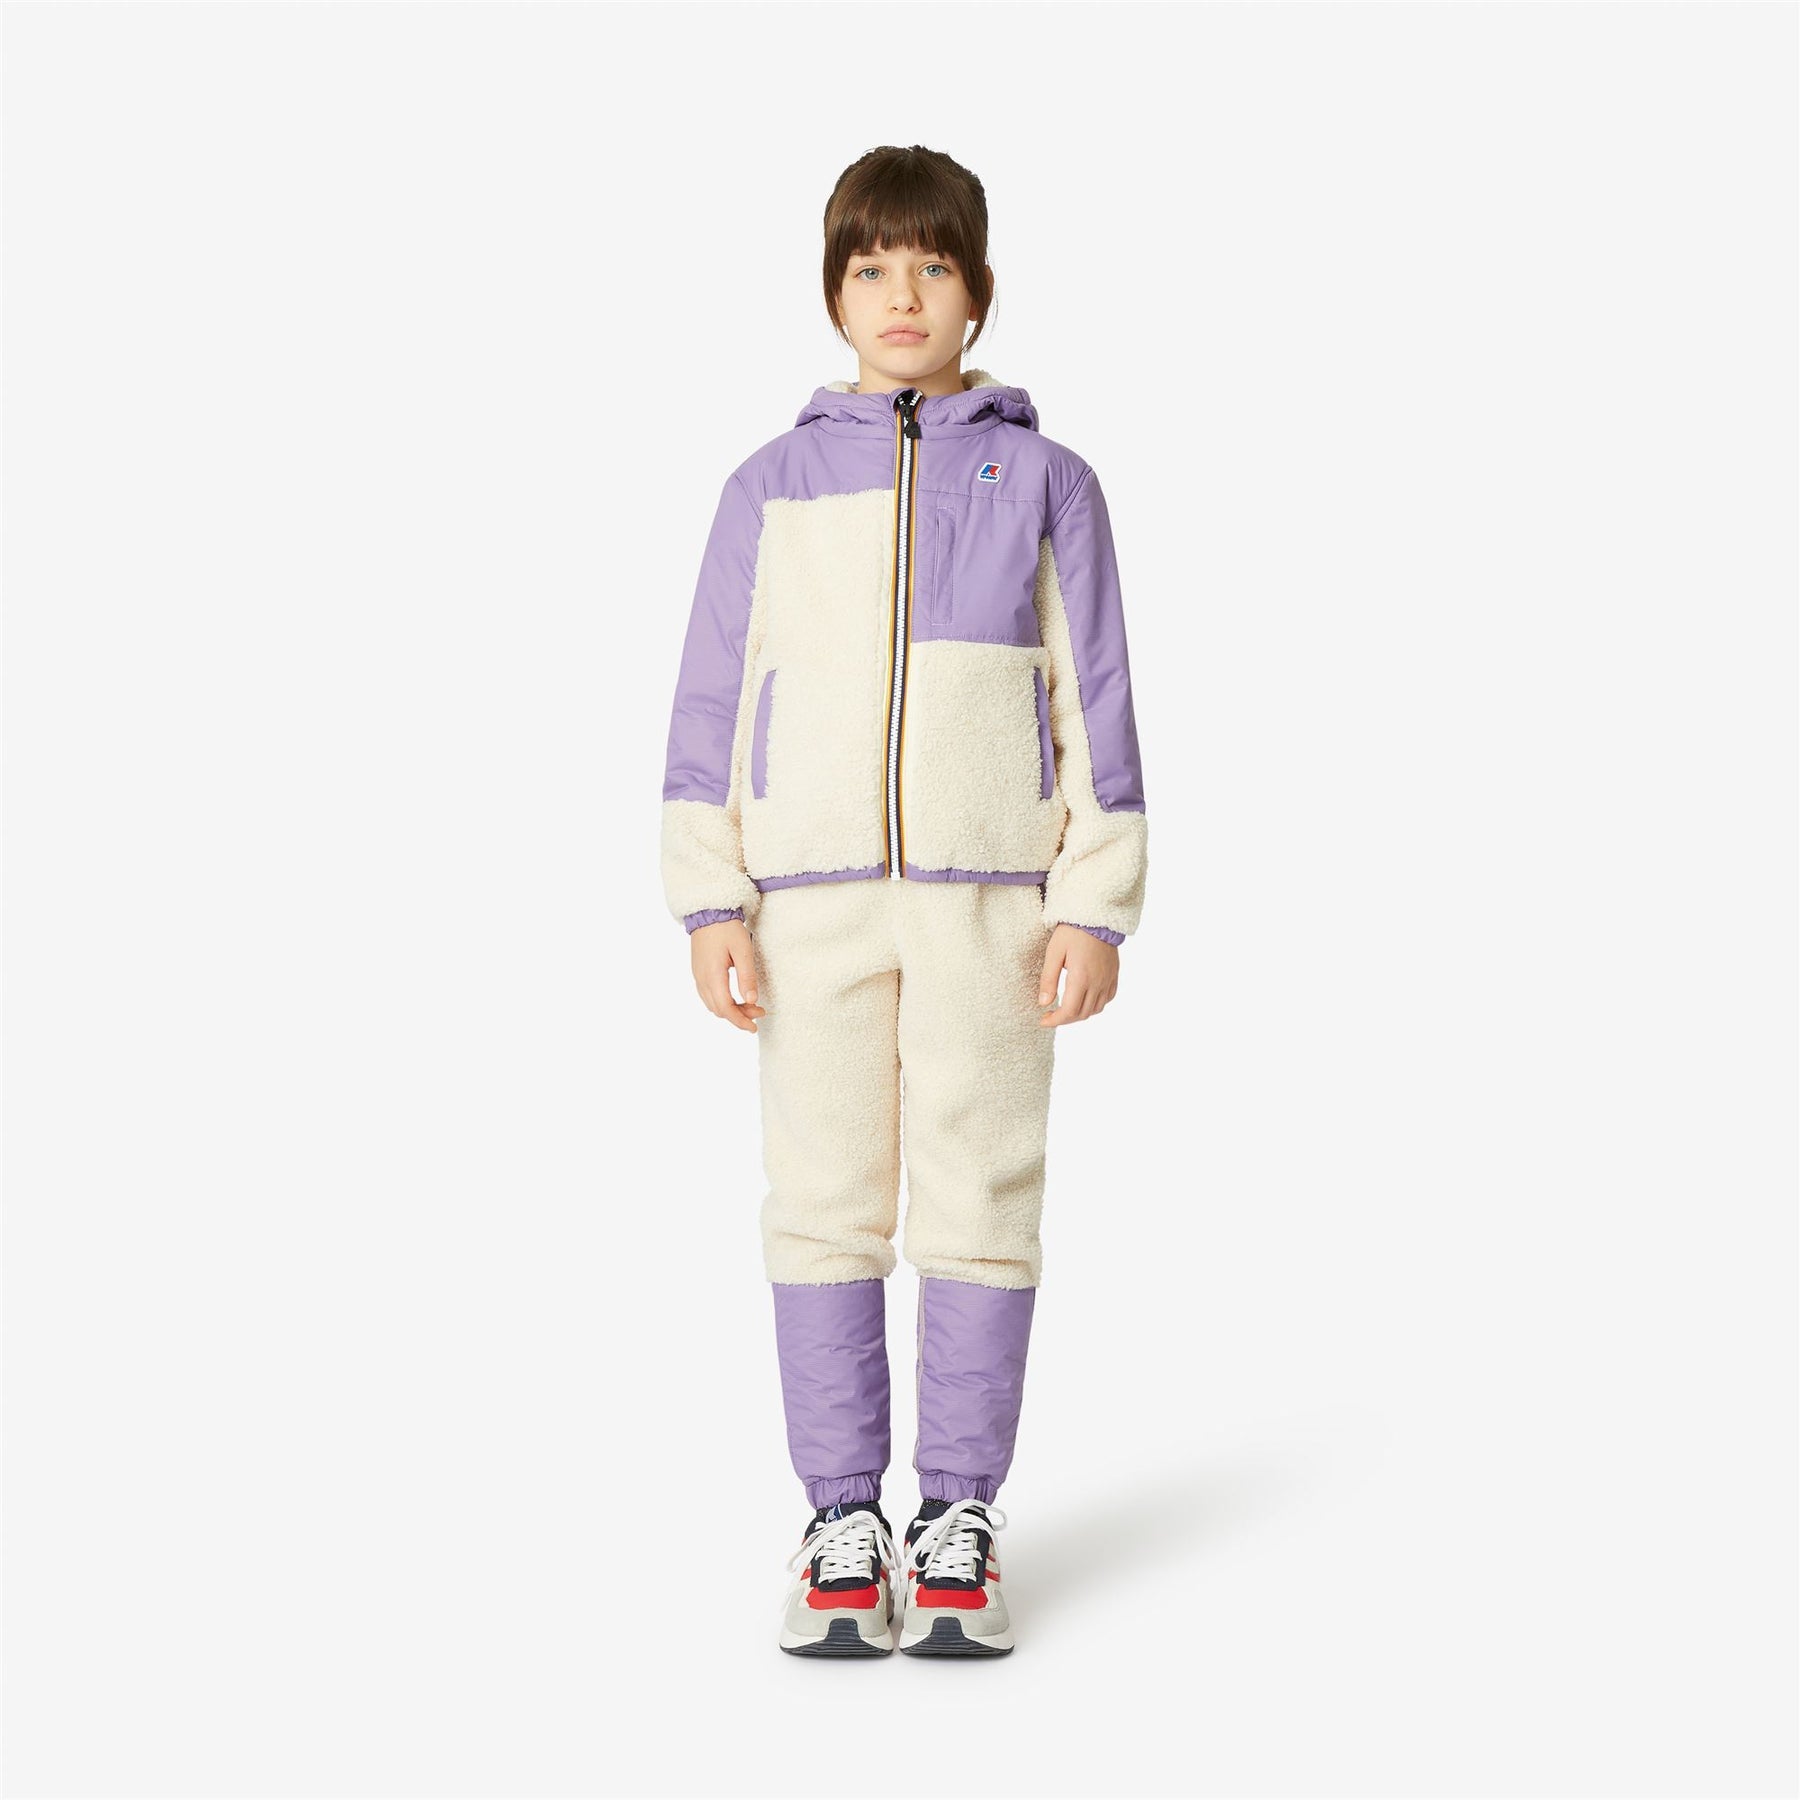 Neige Orsetto - Kids Fleece Top in Ecru - Violet